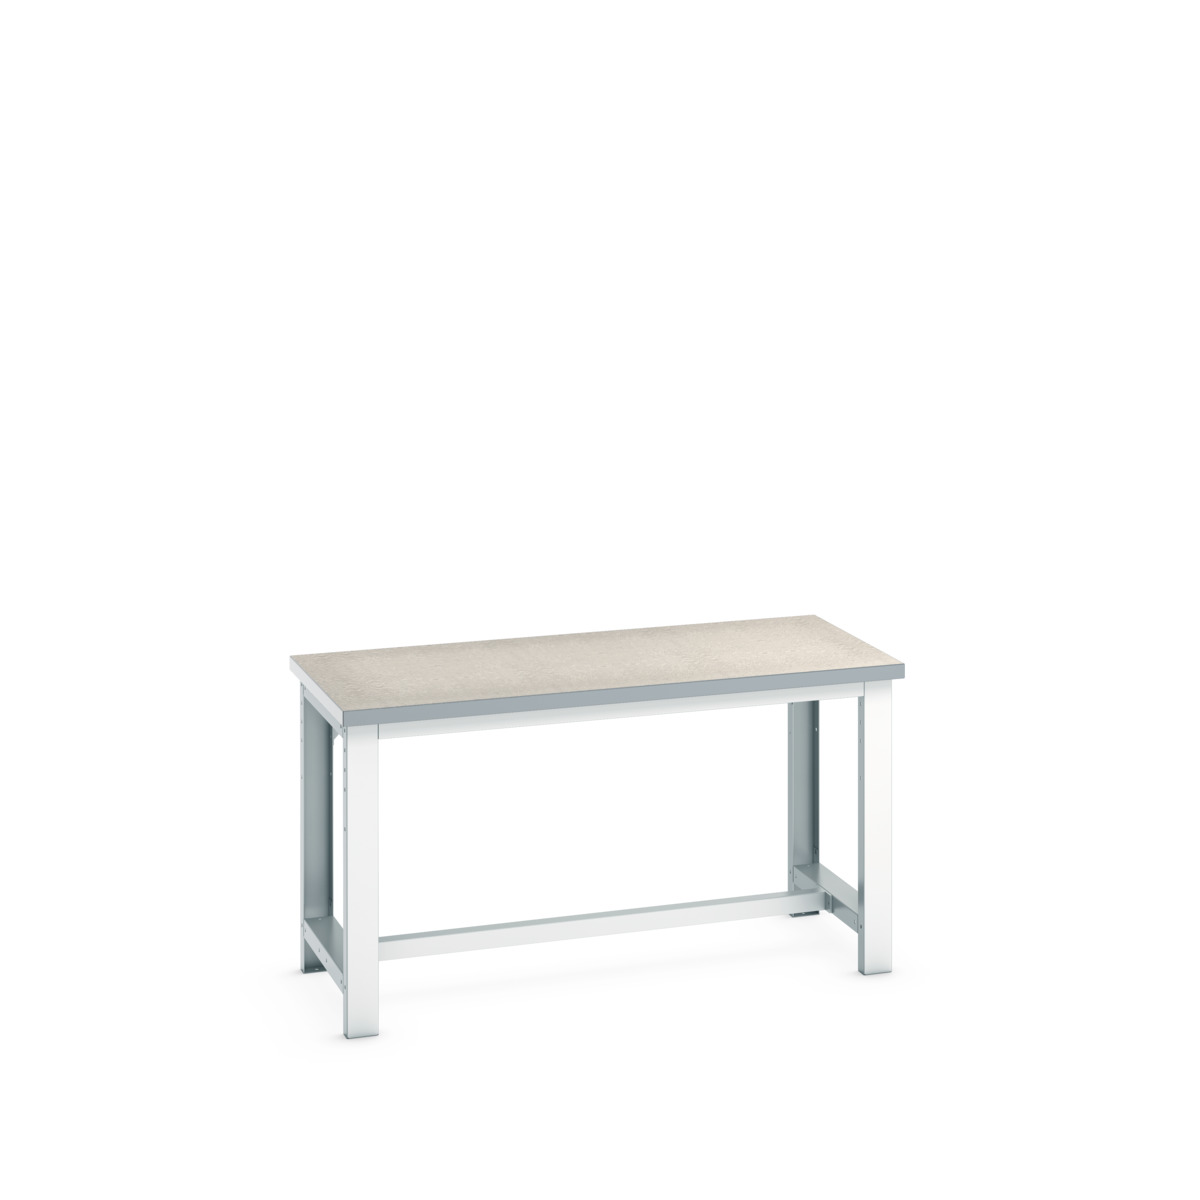 41003084.16V - cubio framework bench (lino)